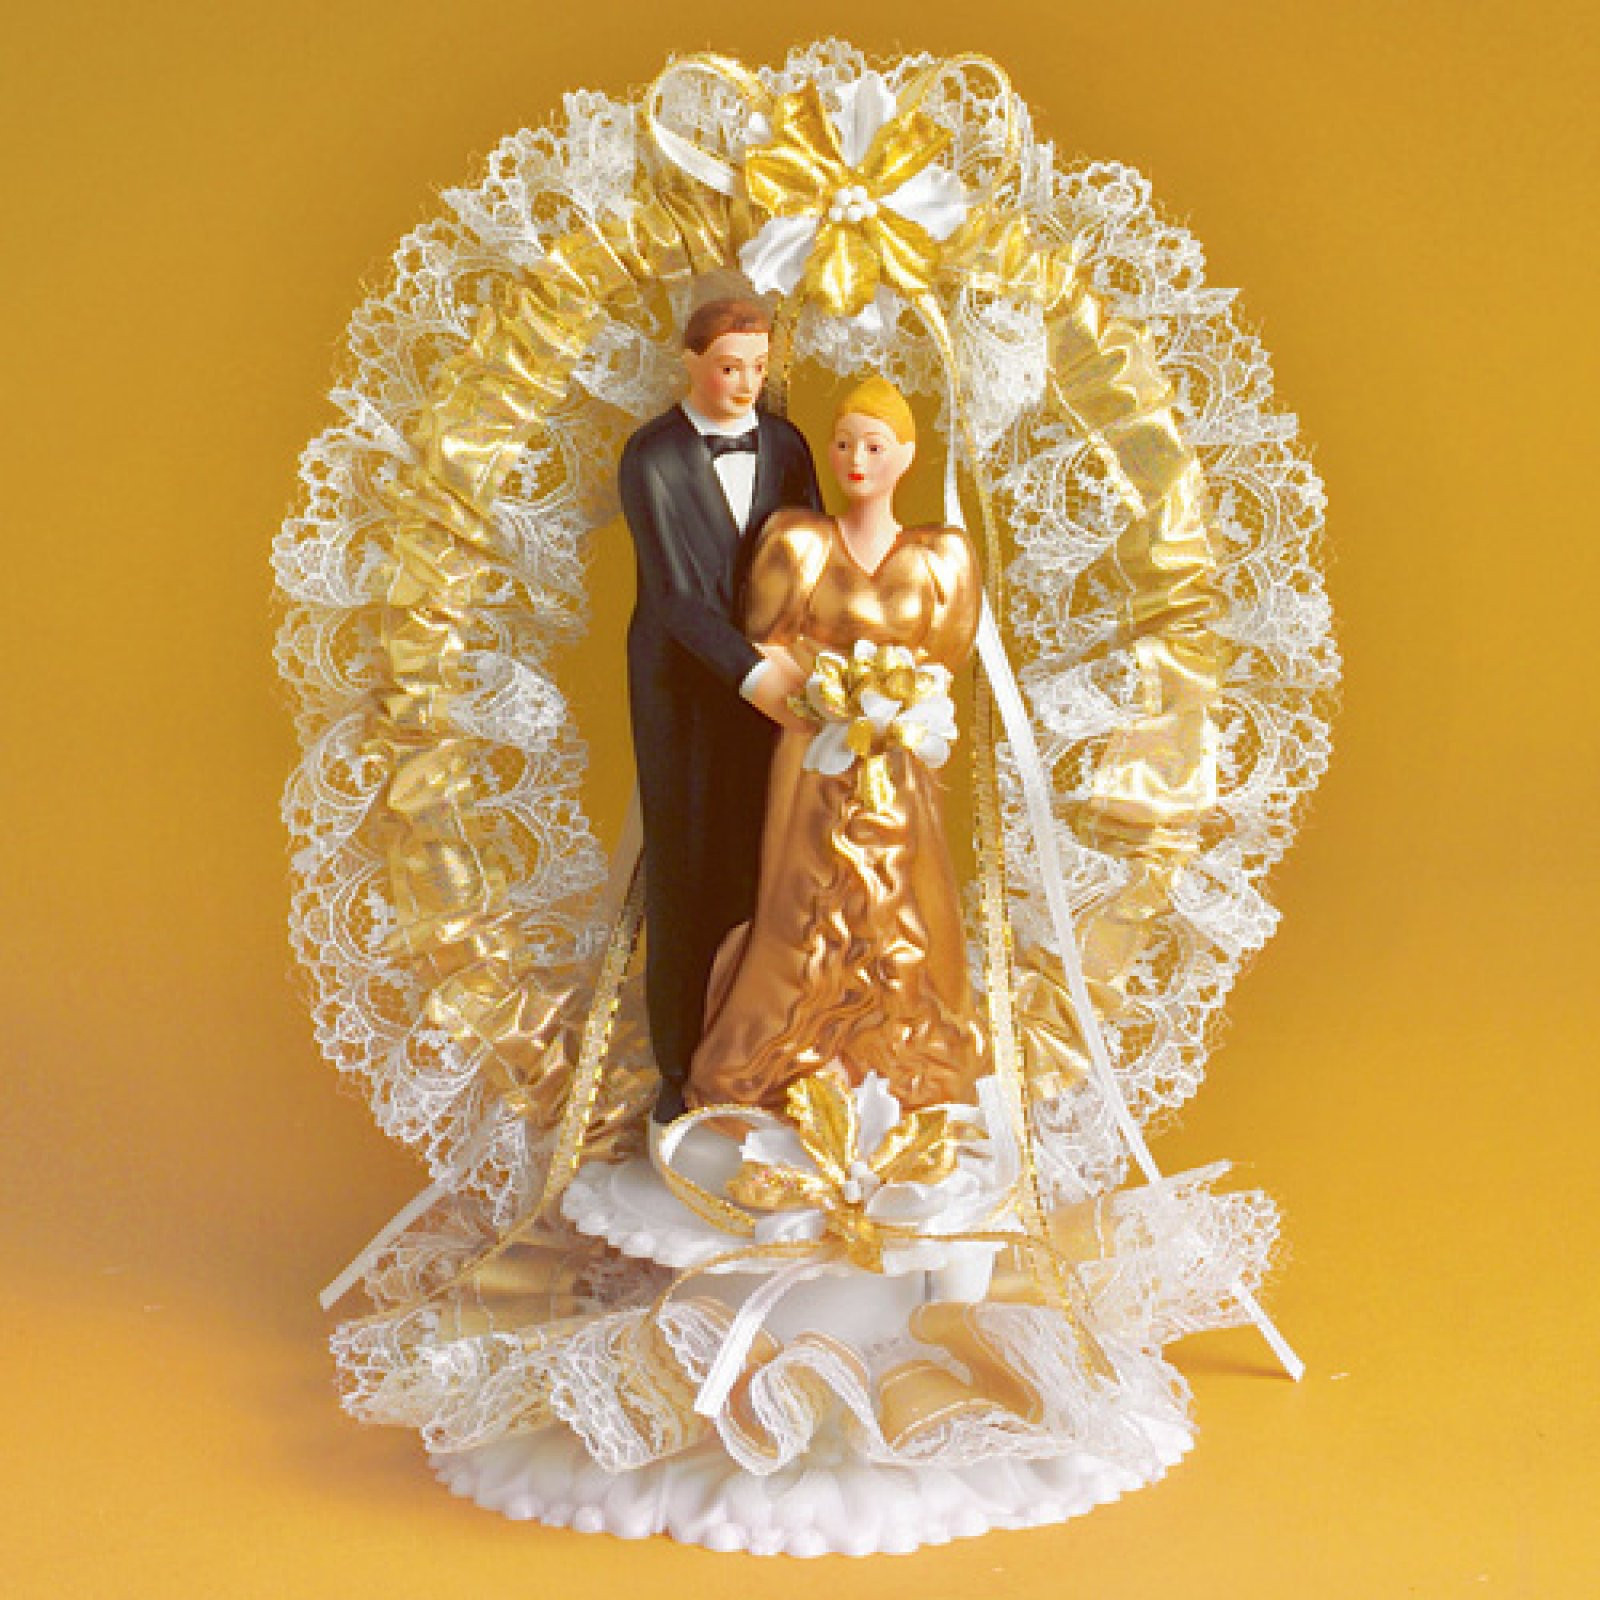 Ideen Goldene Hochzeit
 Brautpaar zur goldenen Hochzeit